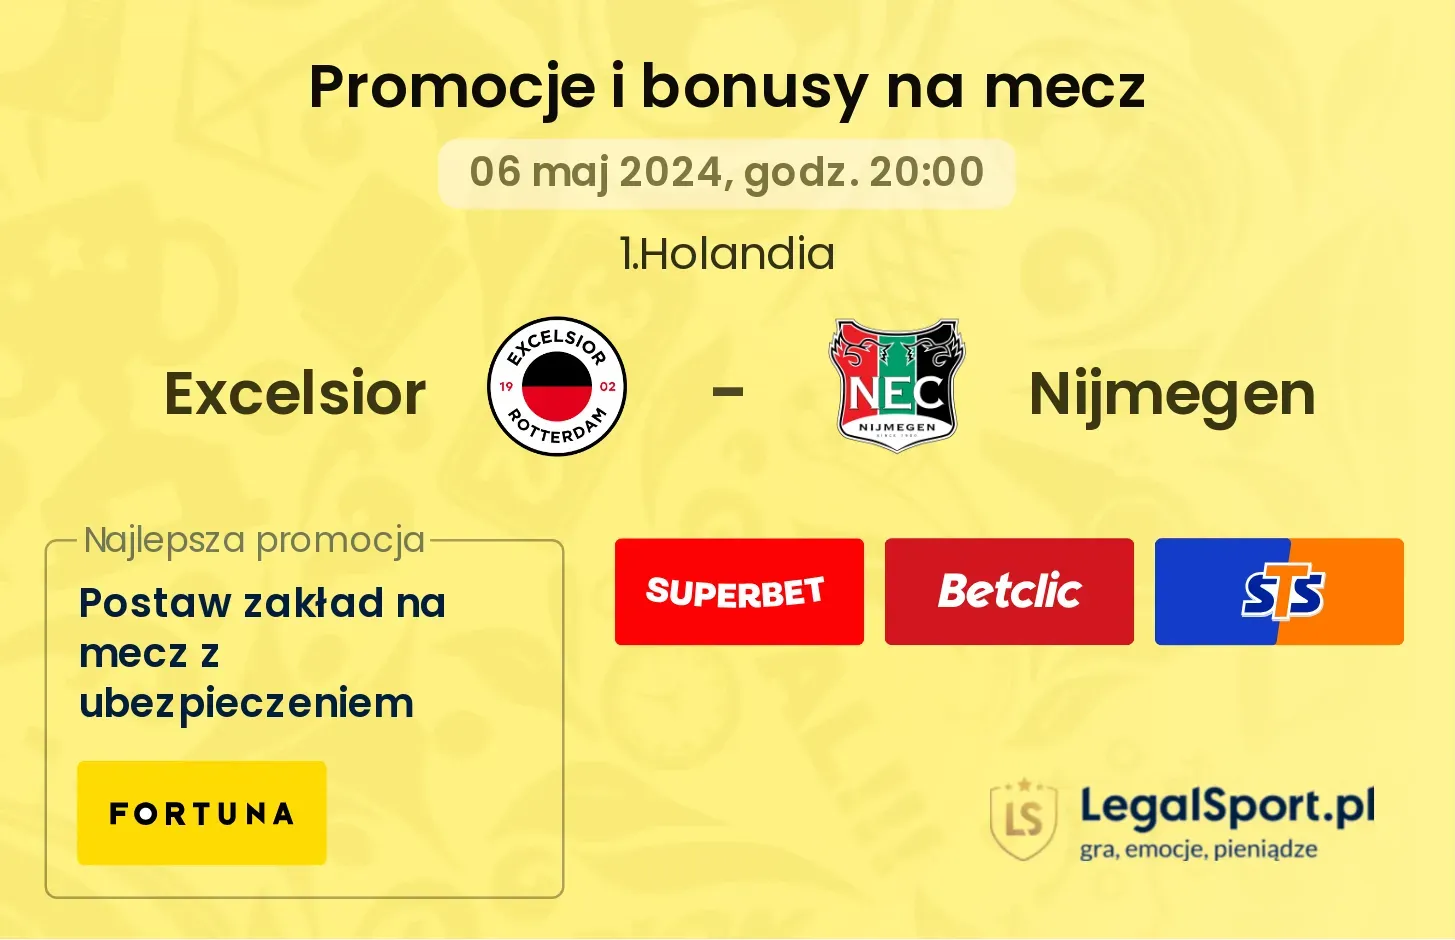 Excelsior - Nijmegen promocje bonusy na mecz